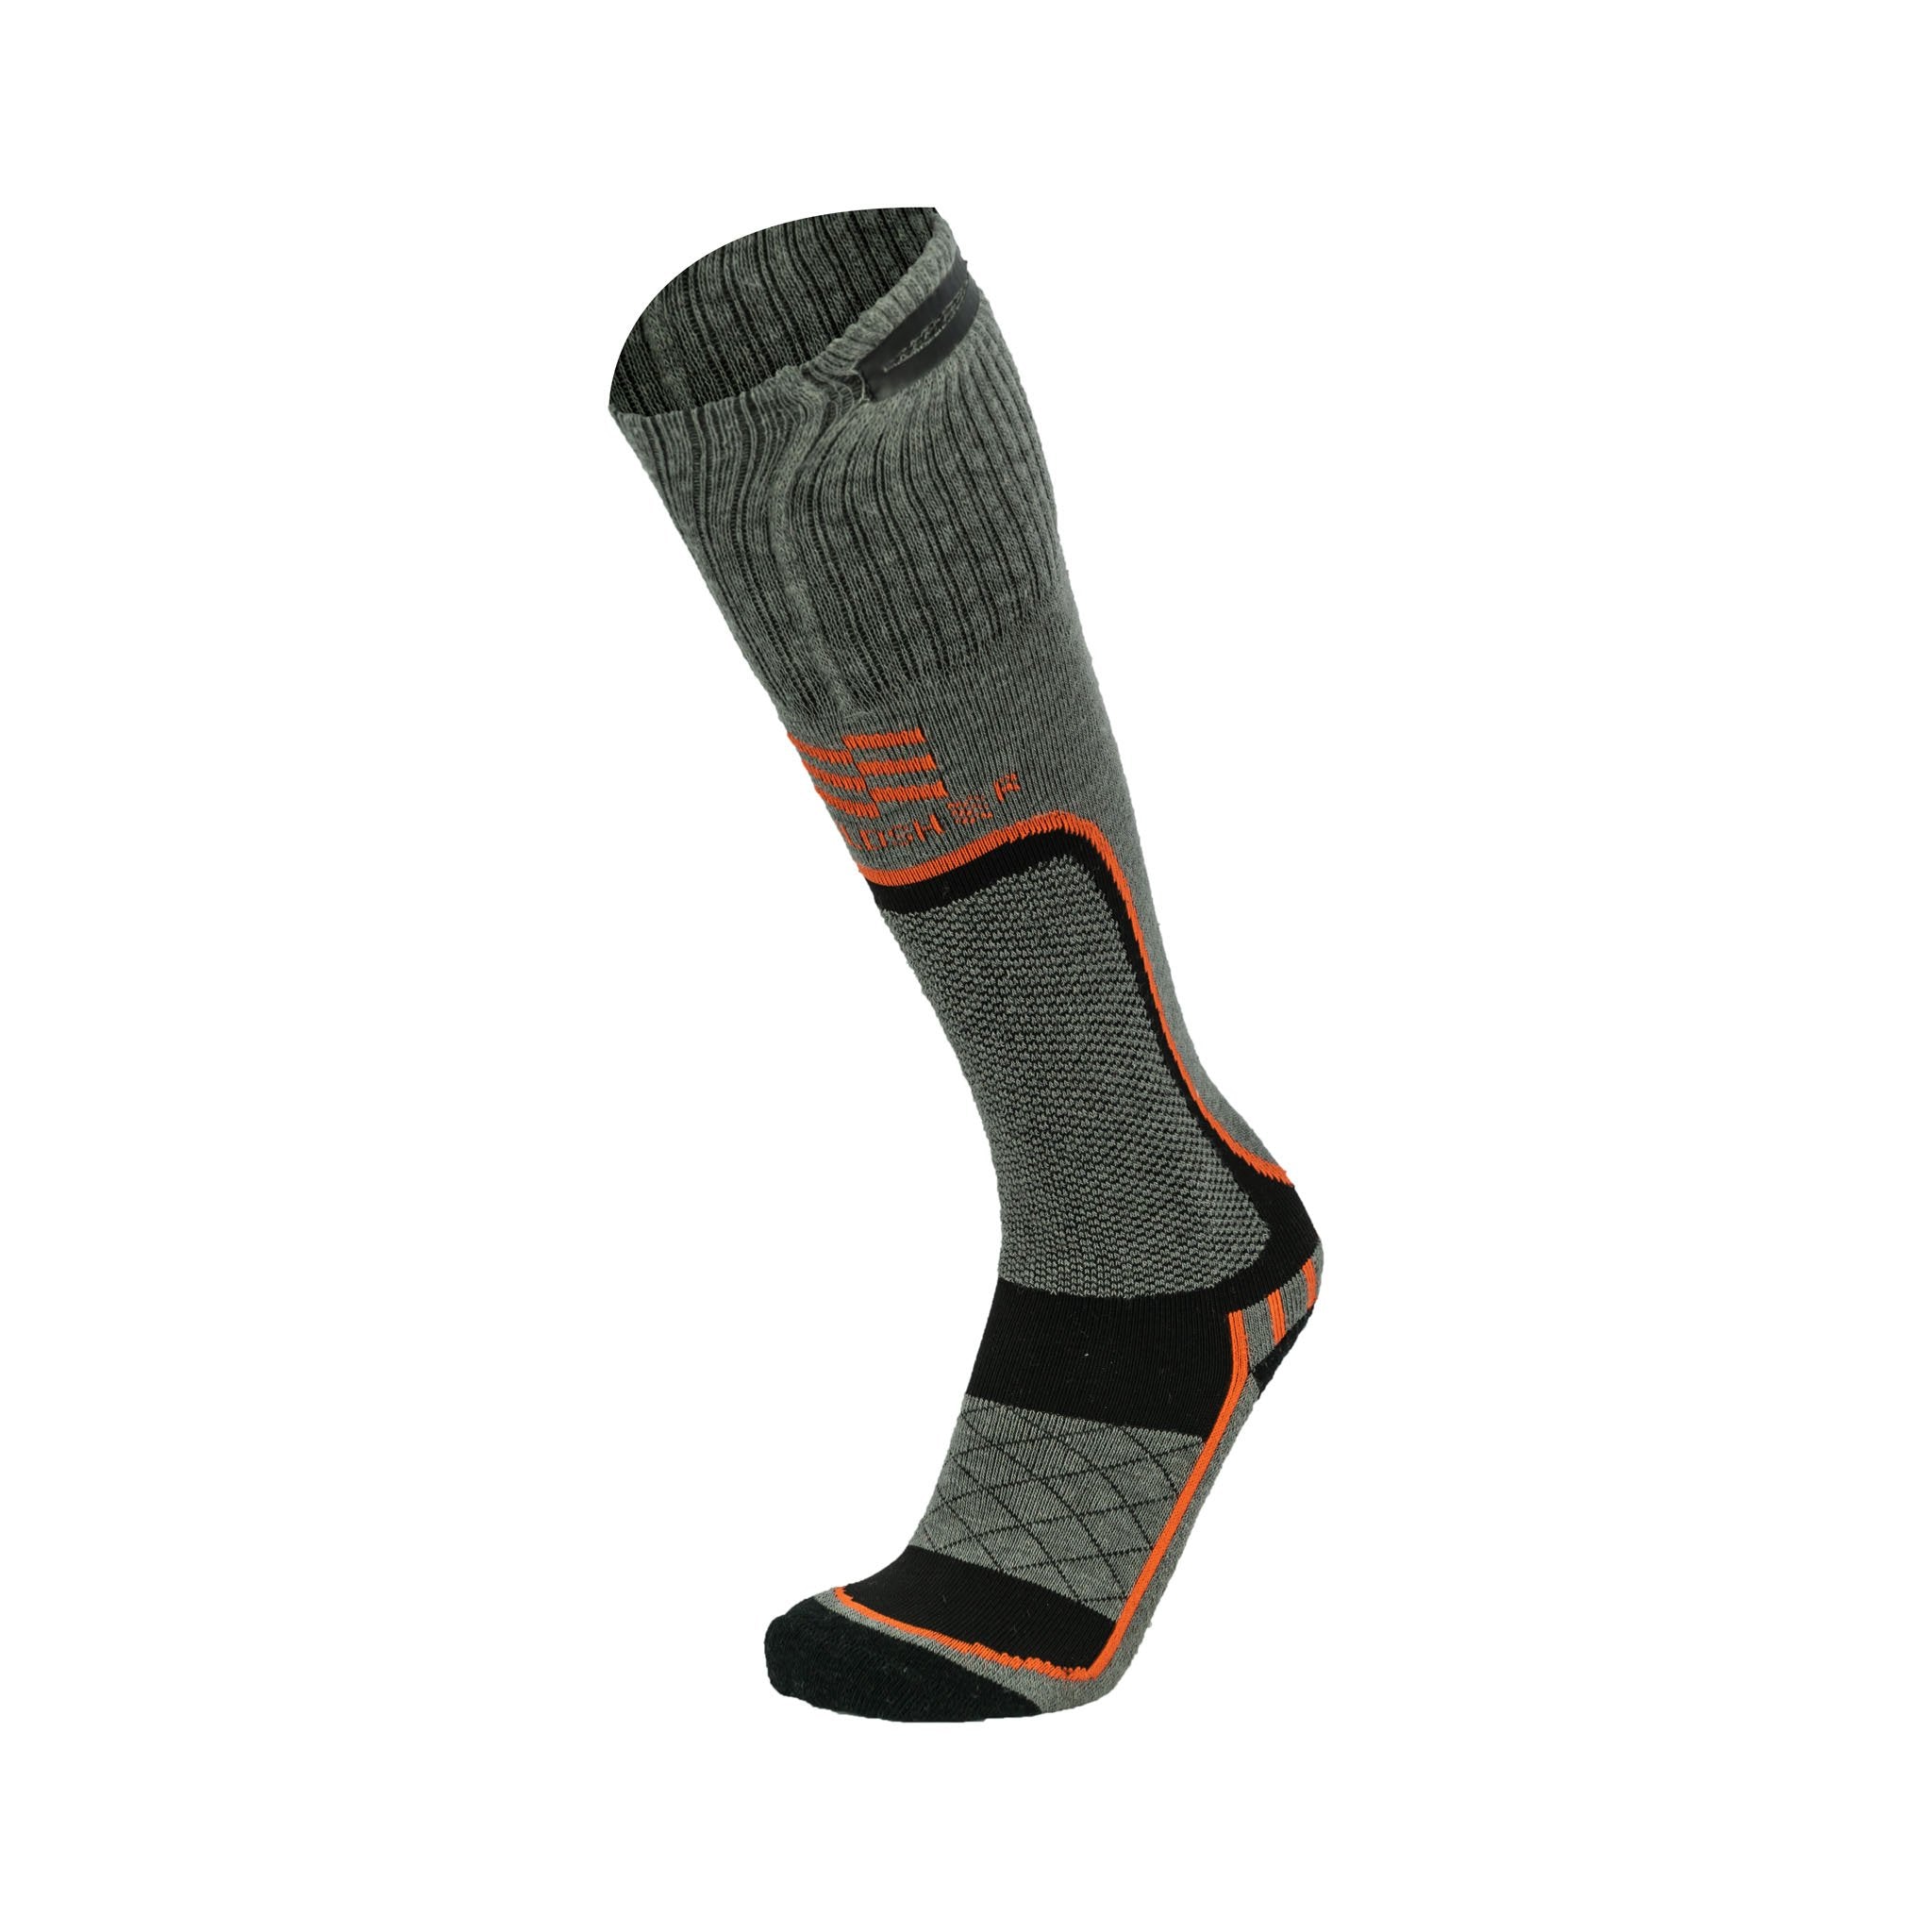 ULTRA LITE™ Thermal Socks